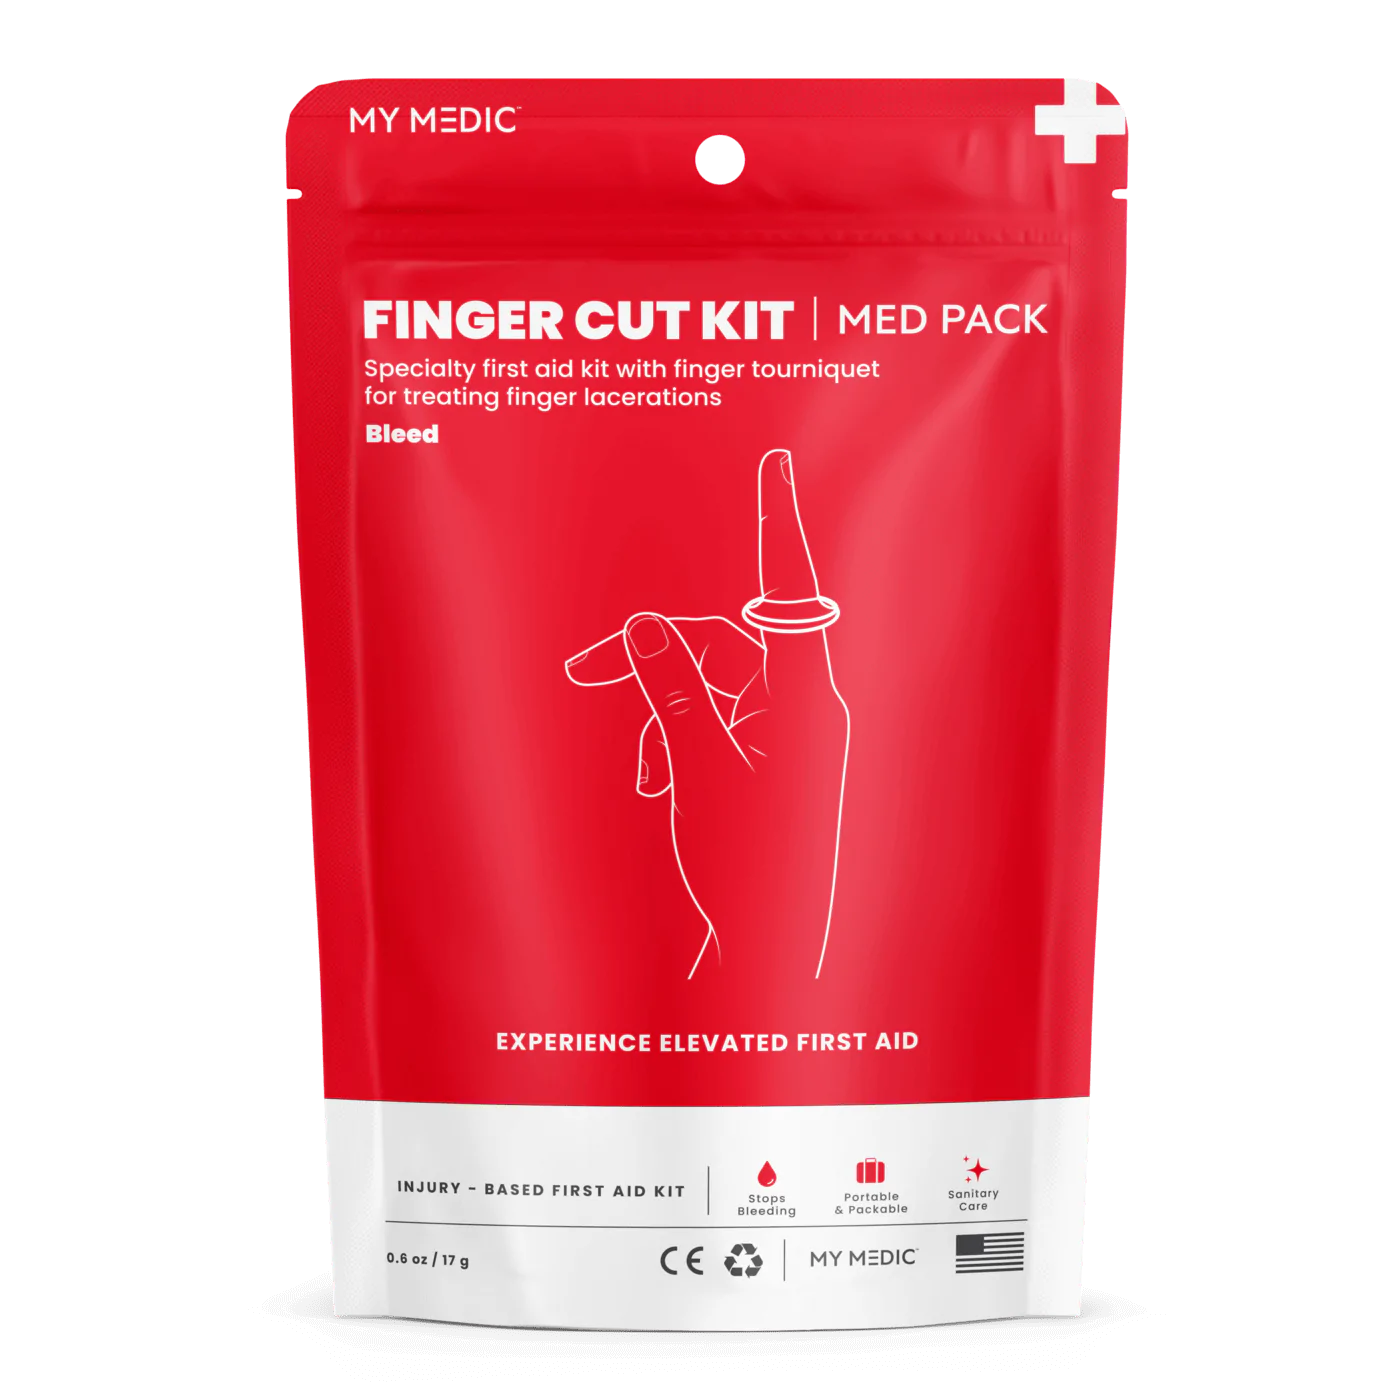 My Medic Finger Cut Kit Med Pack